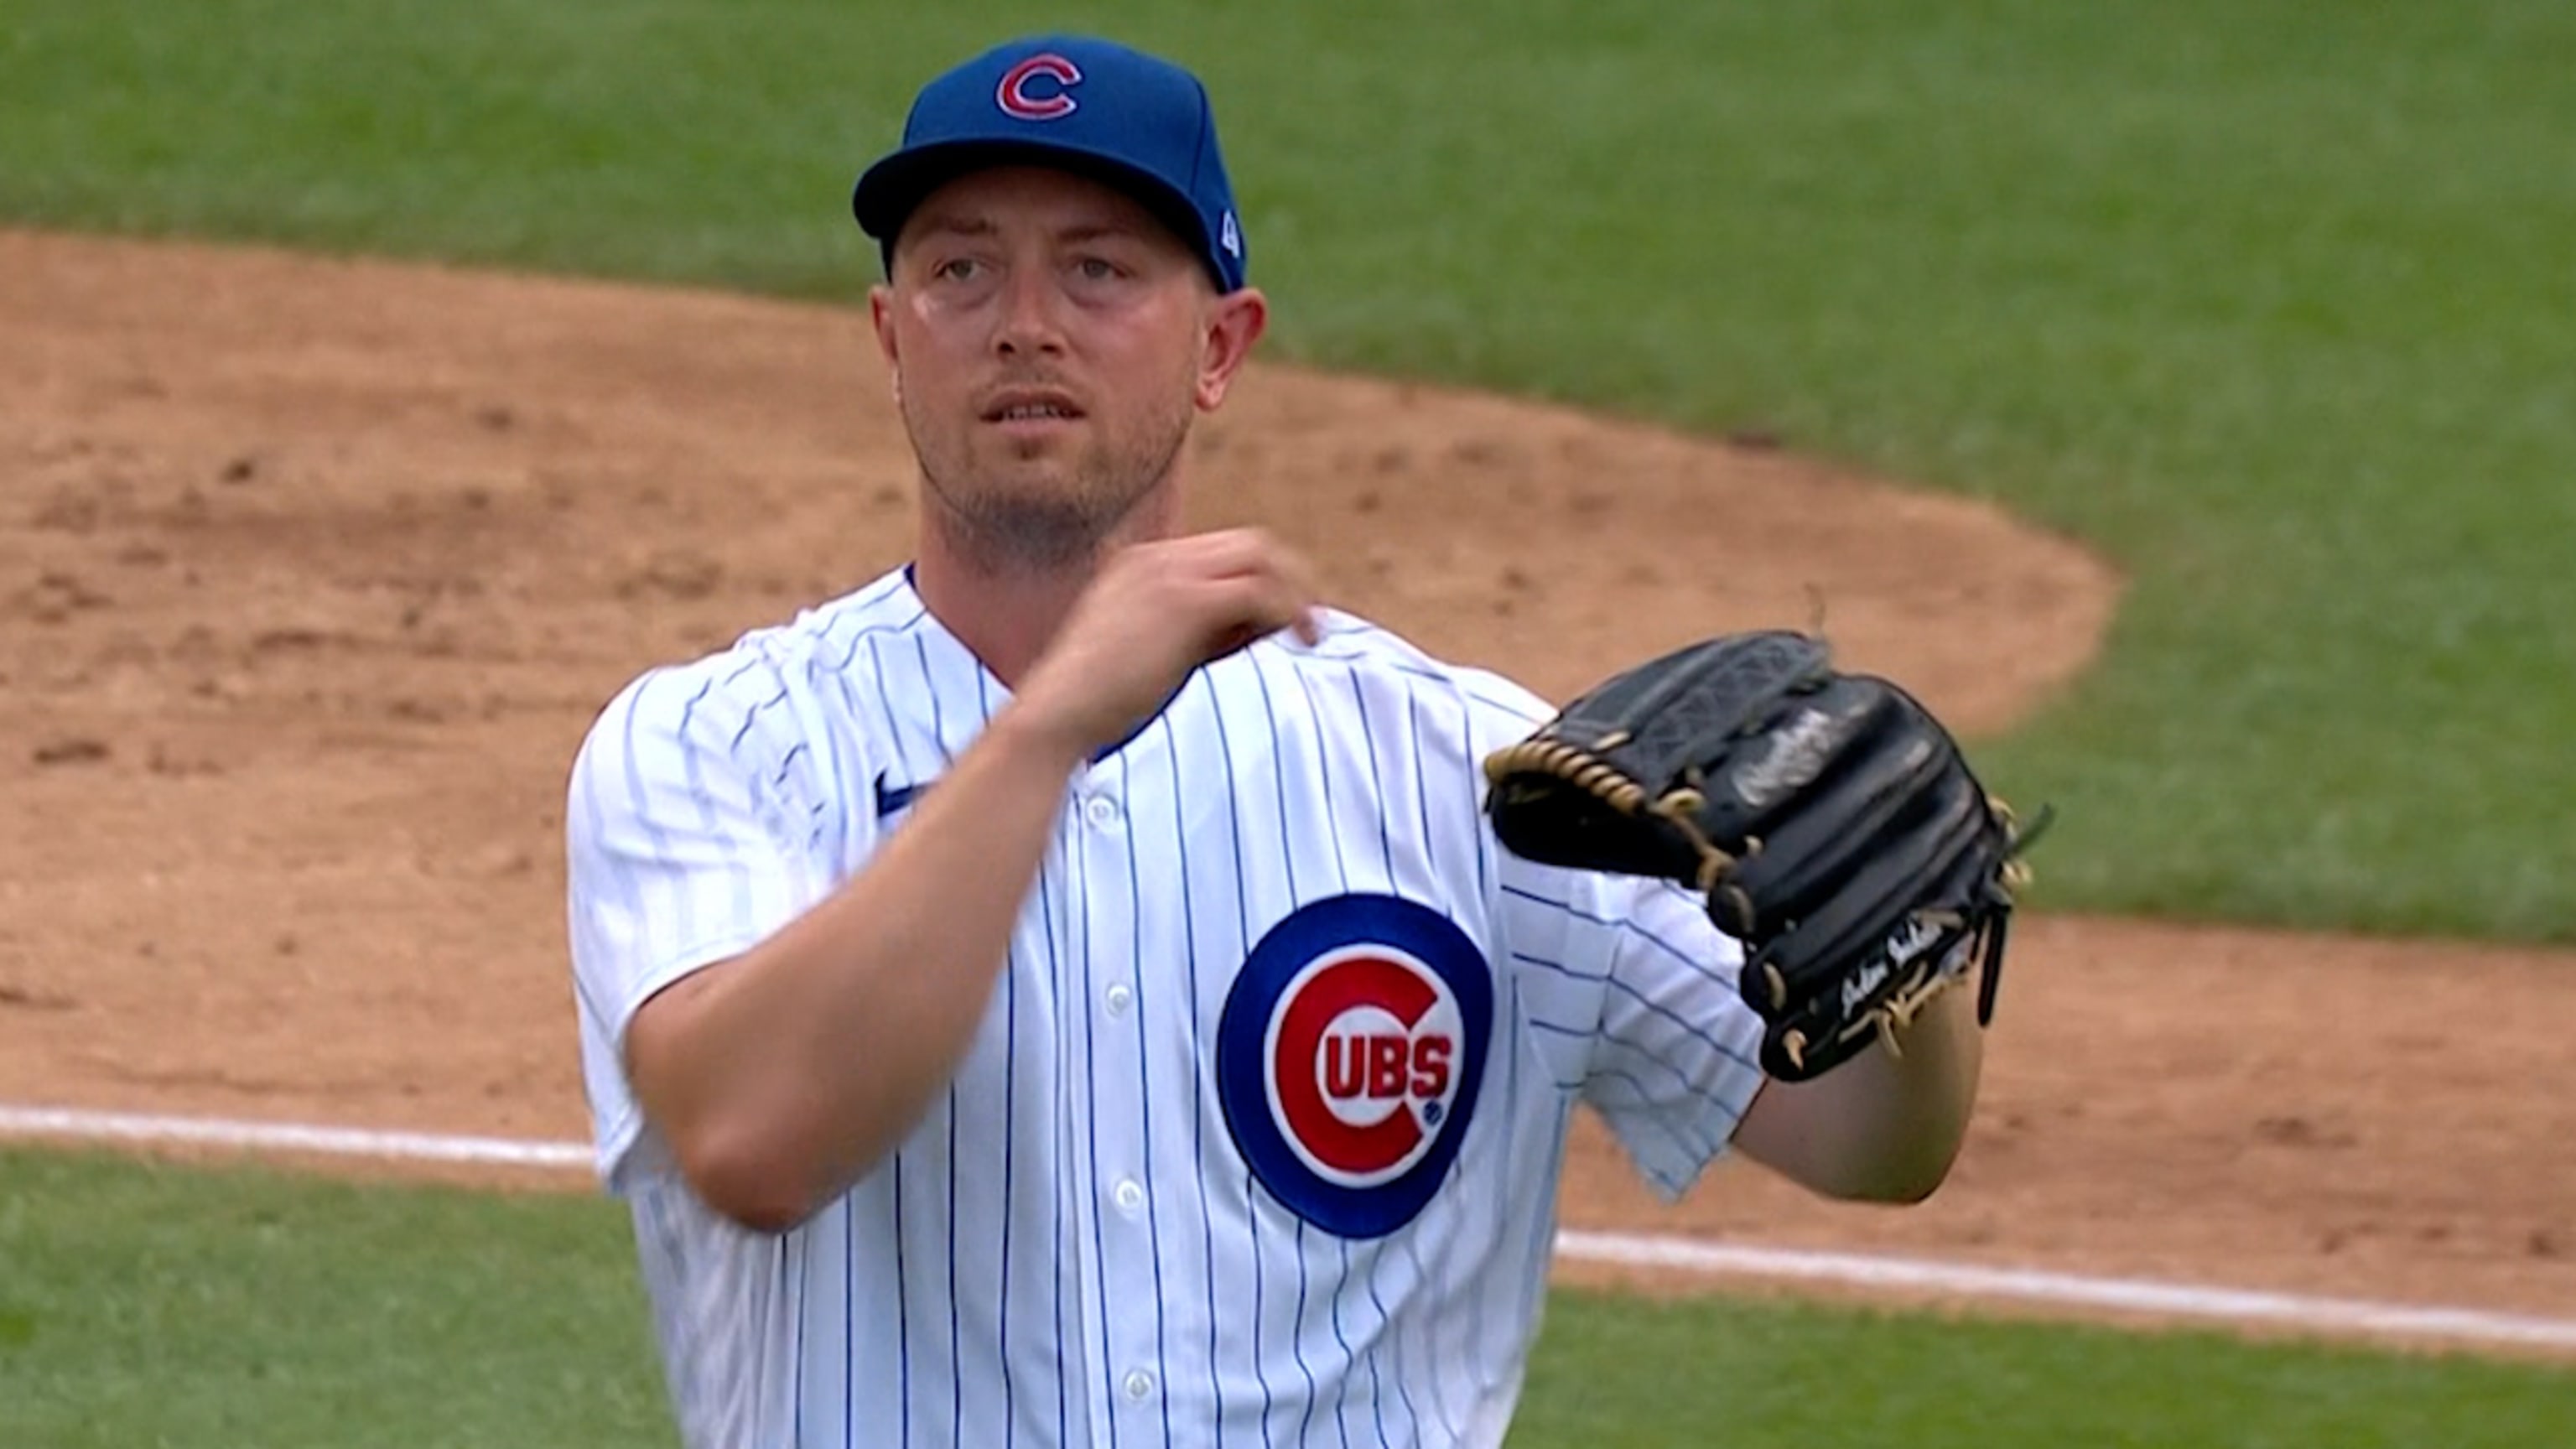 LOOK: Cubs' Nick Madrigal taking groundballs at third base – NBC